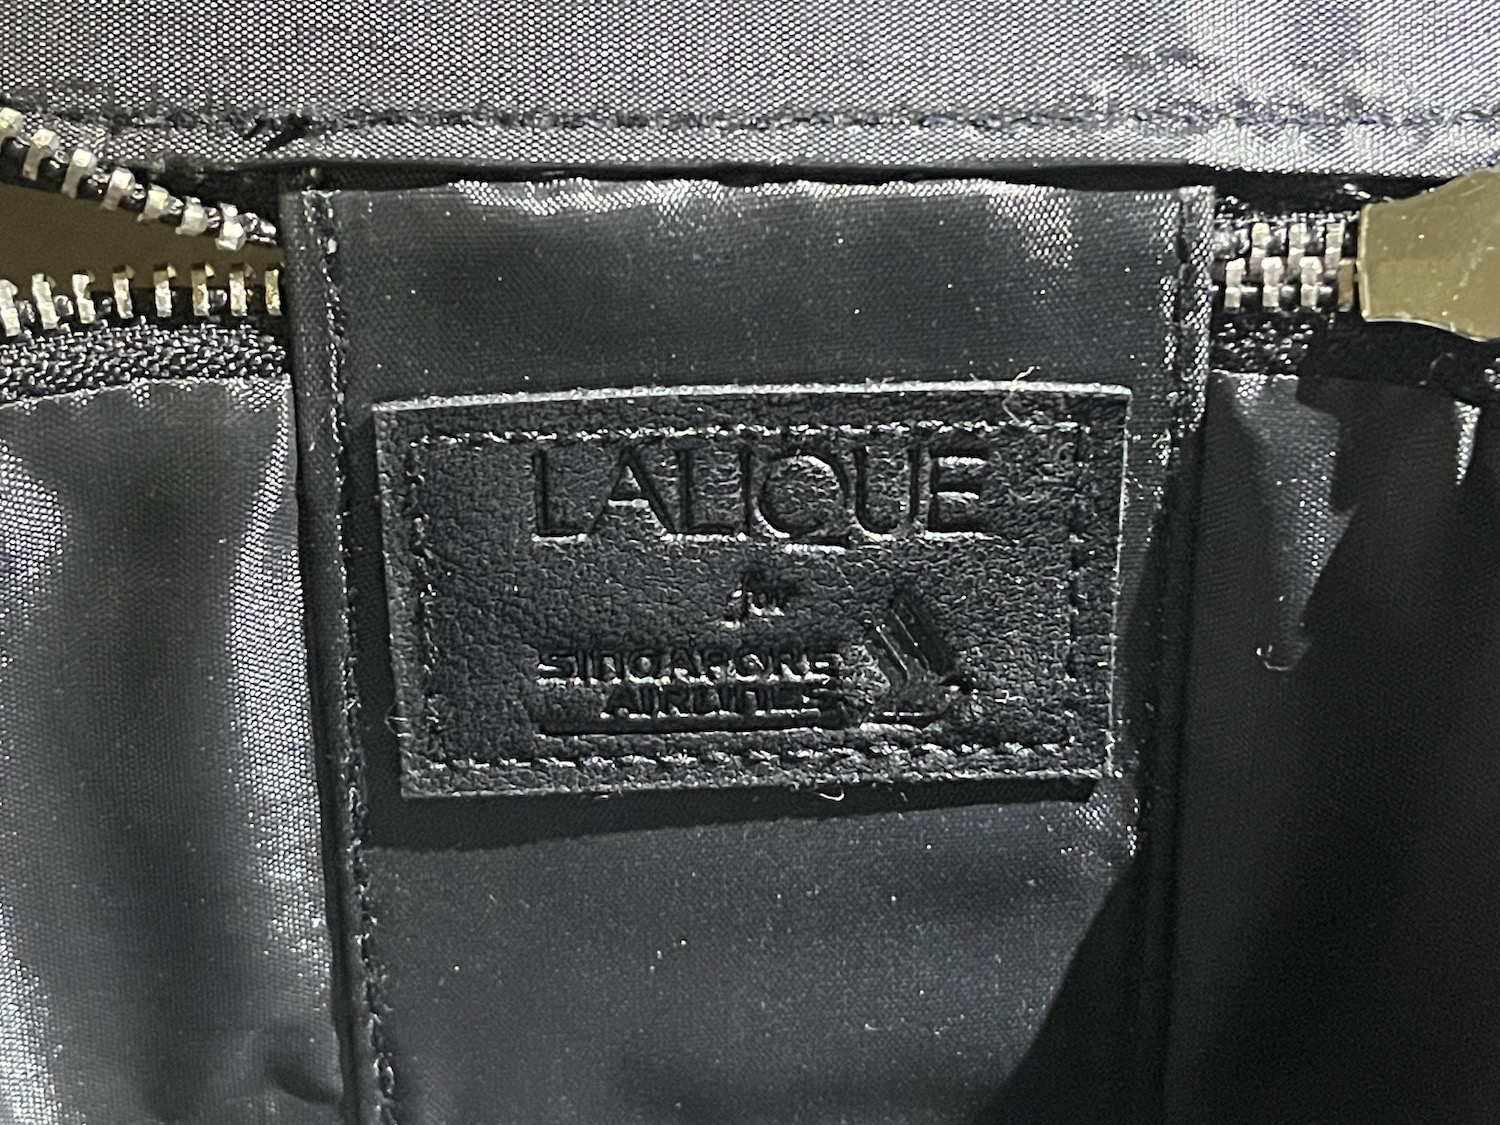 a black leather label on a black bag